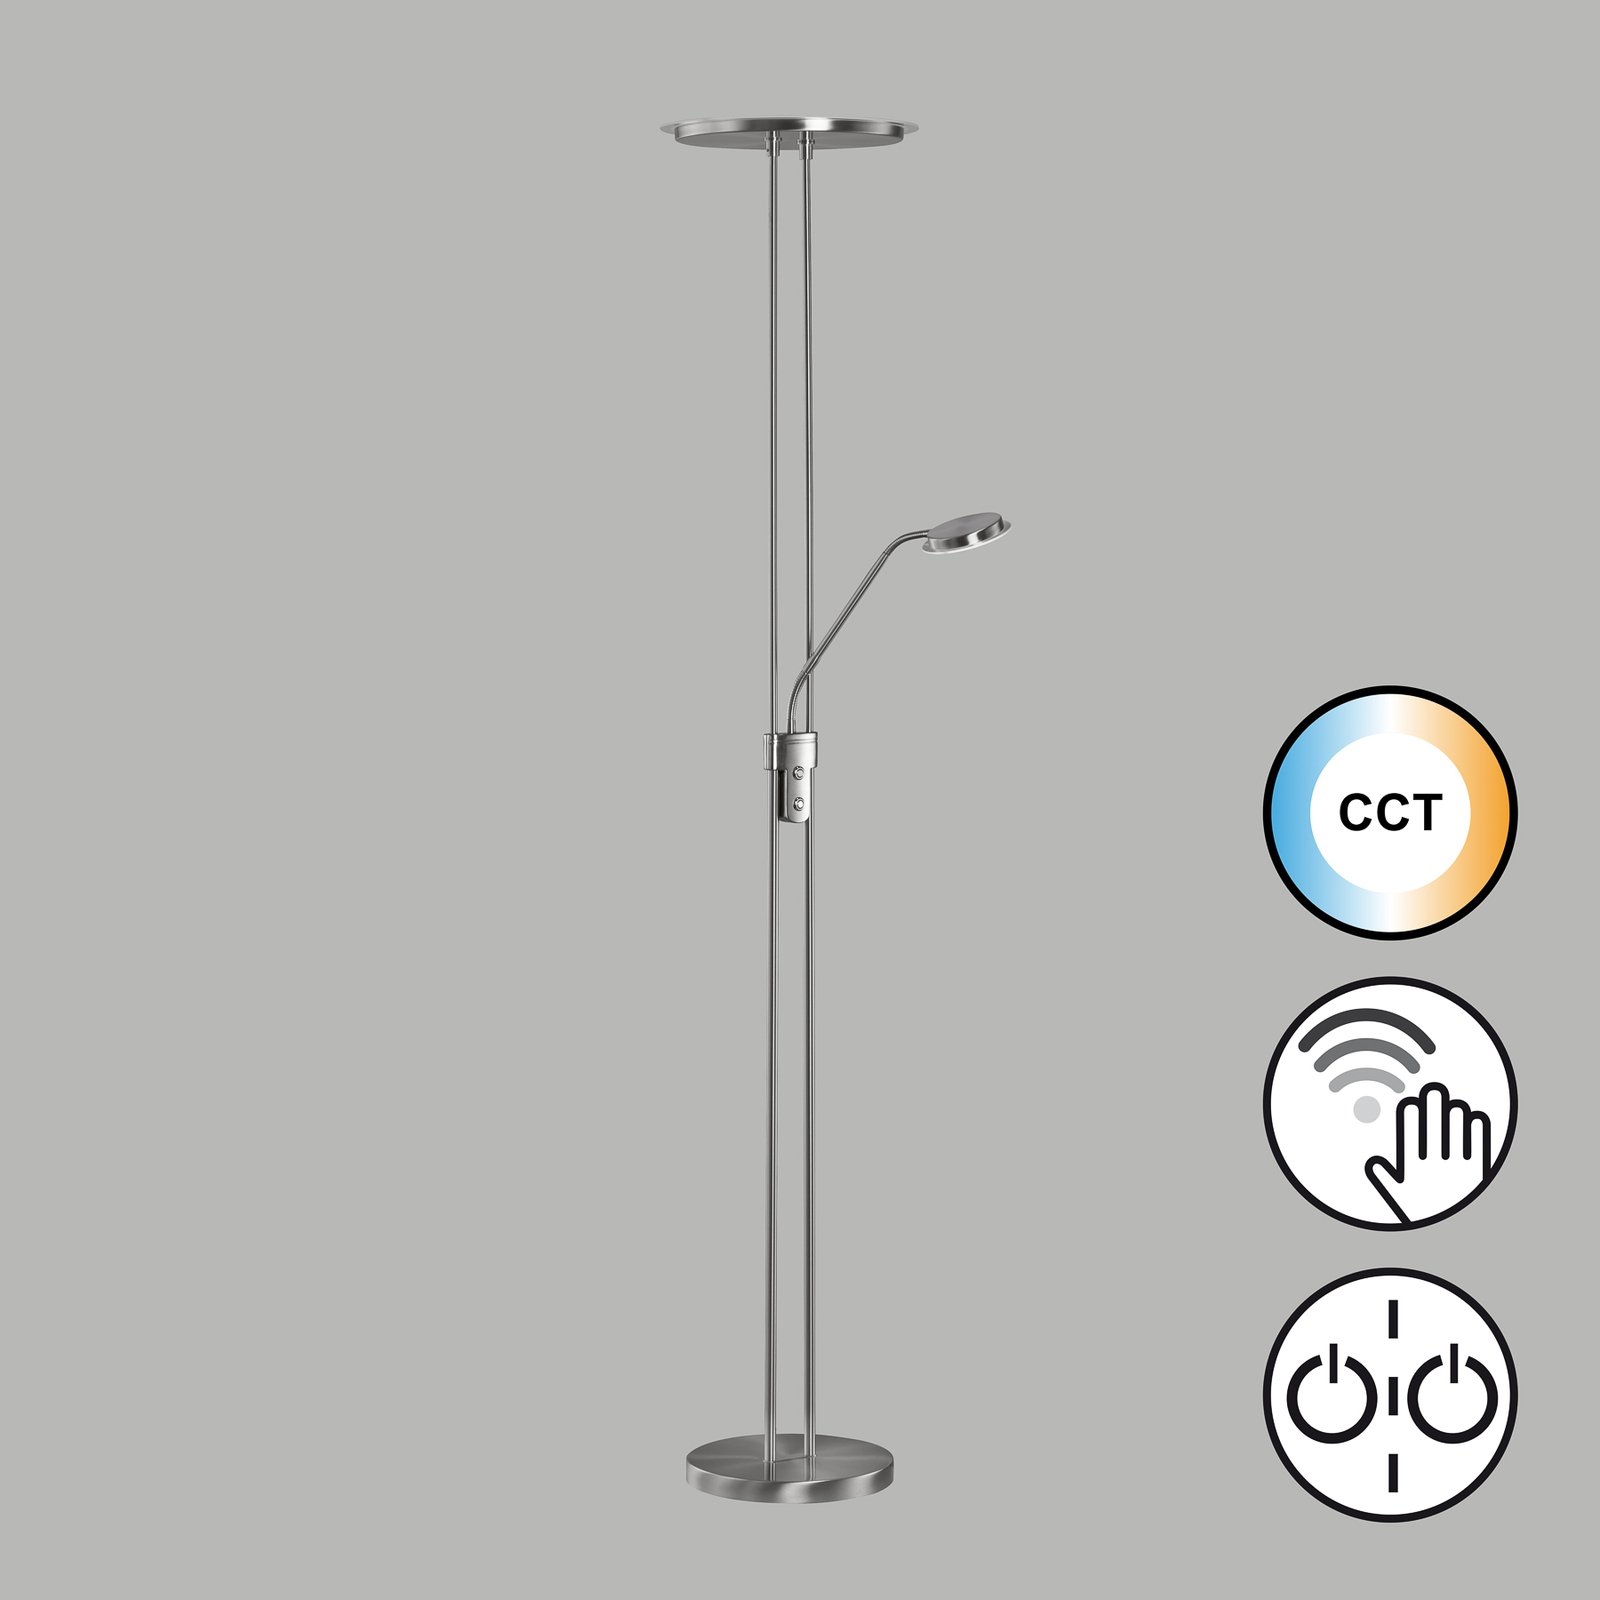 LED stojacia lampa Driva, niklová farba, výška 182, 2 svetlá, CCT